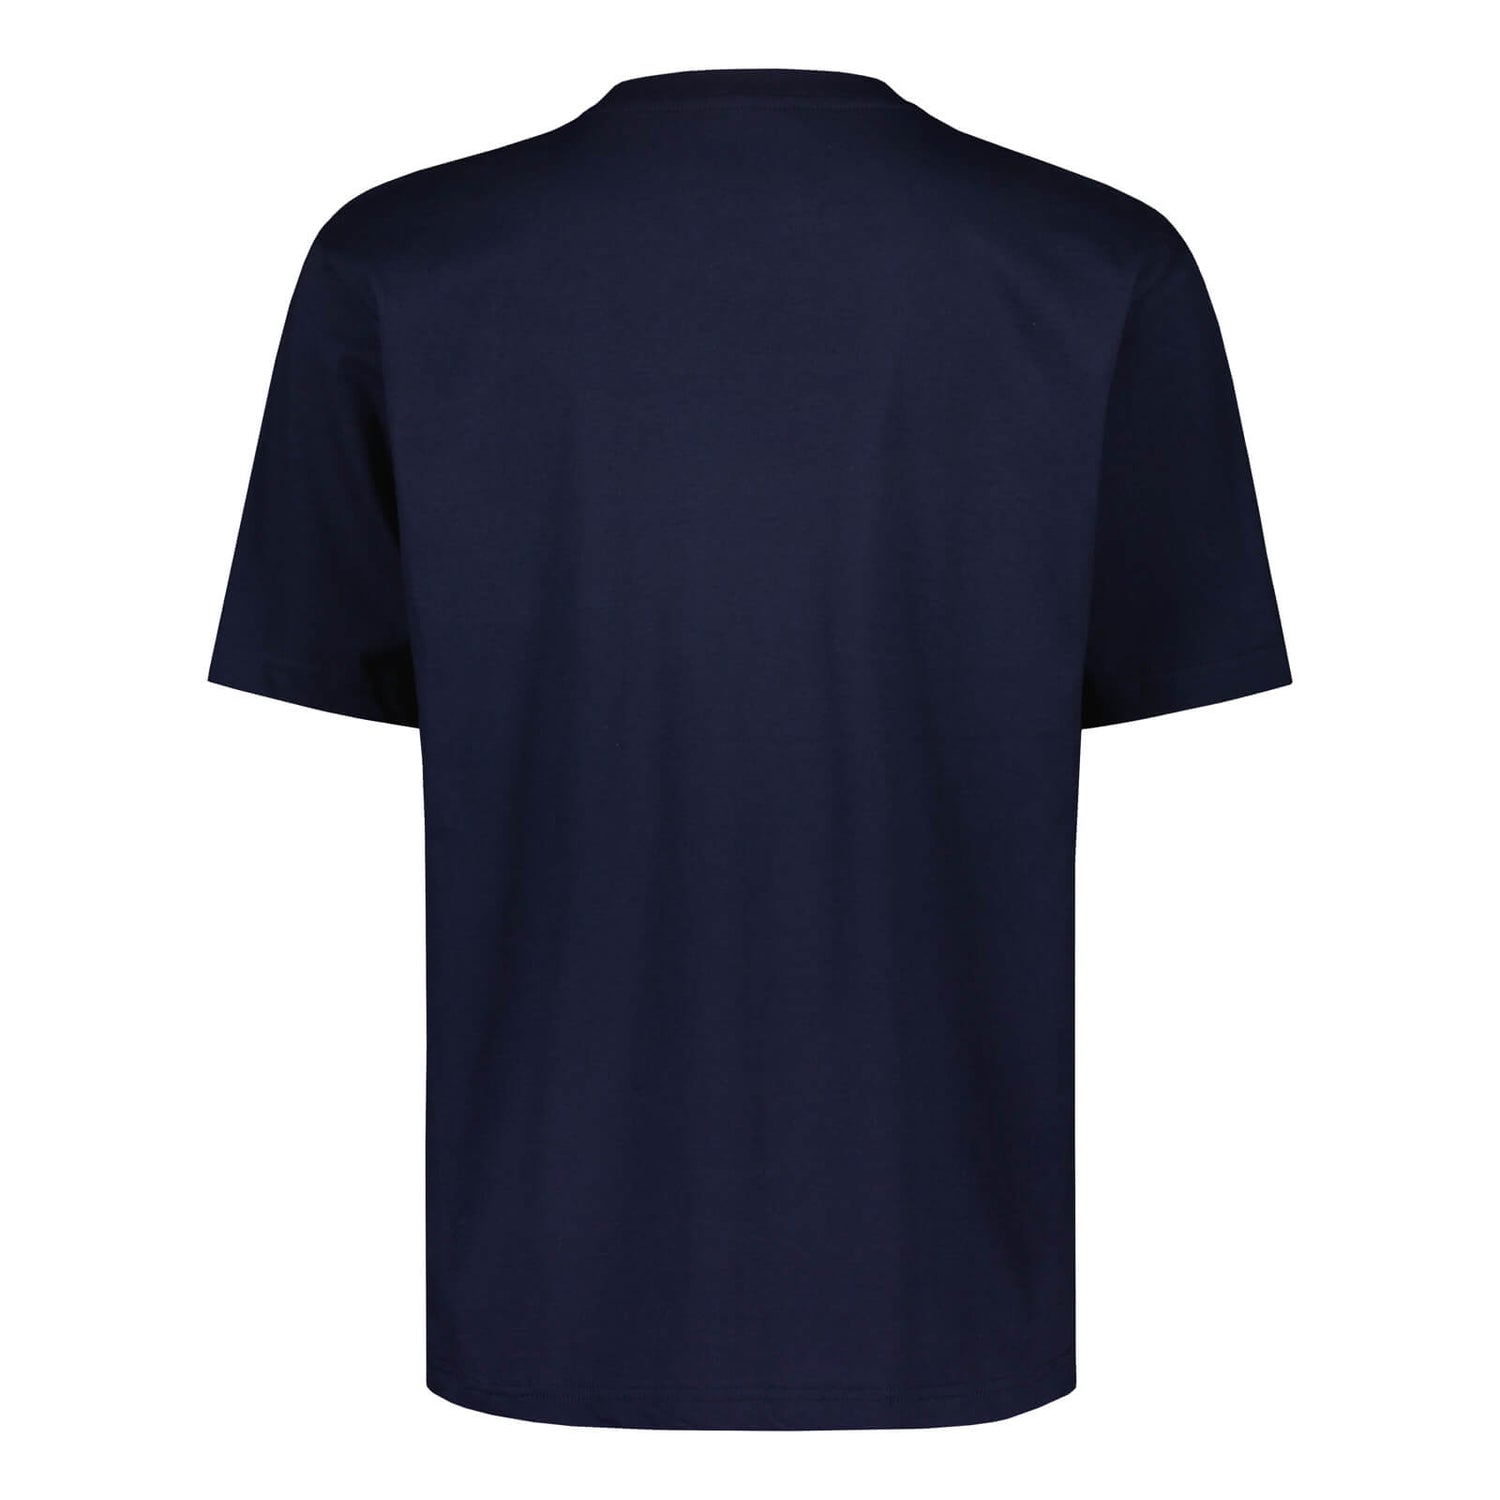 Teemu Pukki Fan T-shirt, Navy Blue